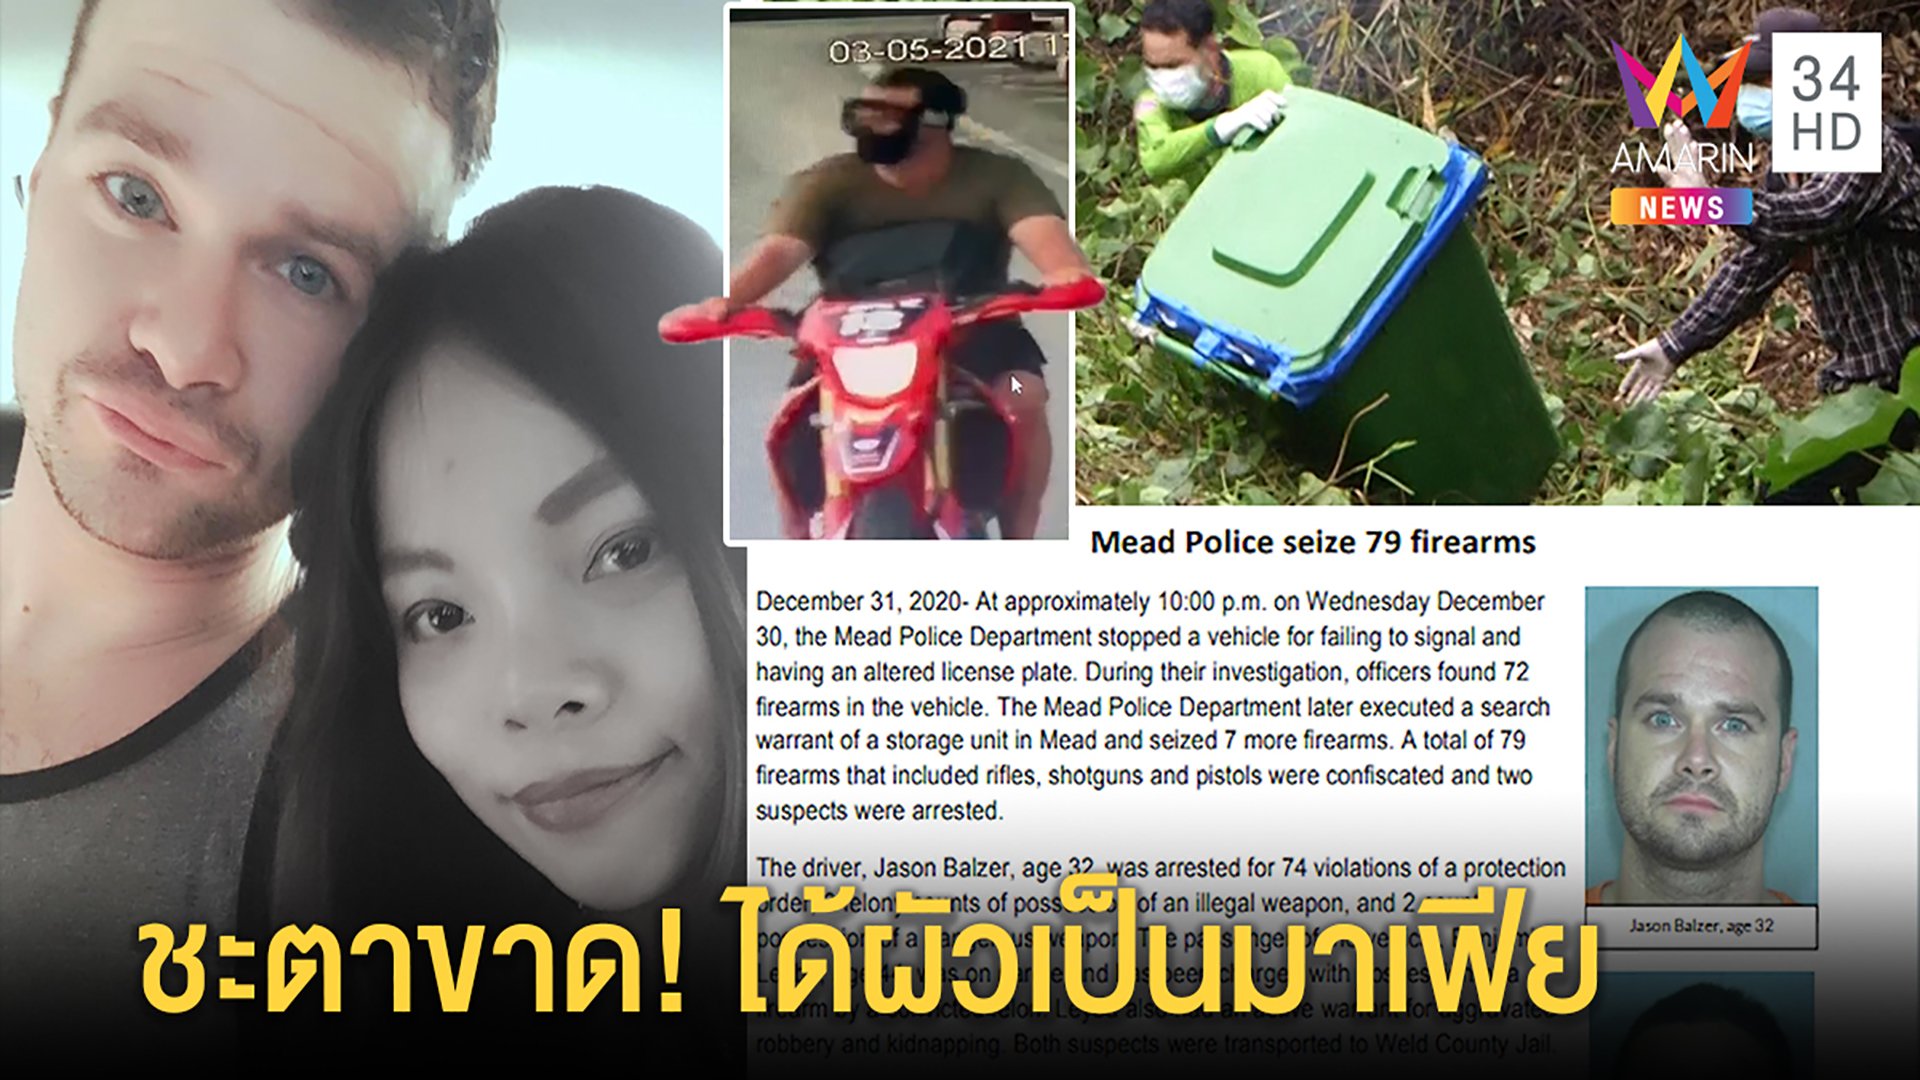 แฉ "เจสัน" ฝรั่งเหี้ยมฆ่าเมียไทยเป็นมาเฟียเก่า-ถอยรถใหม่หนีหลังยัดศพเมียลงขยะ | ทุบโต๊ะข่าว | 6 พ.ค. 64 | AMARIN TVHD34